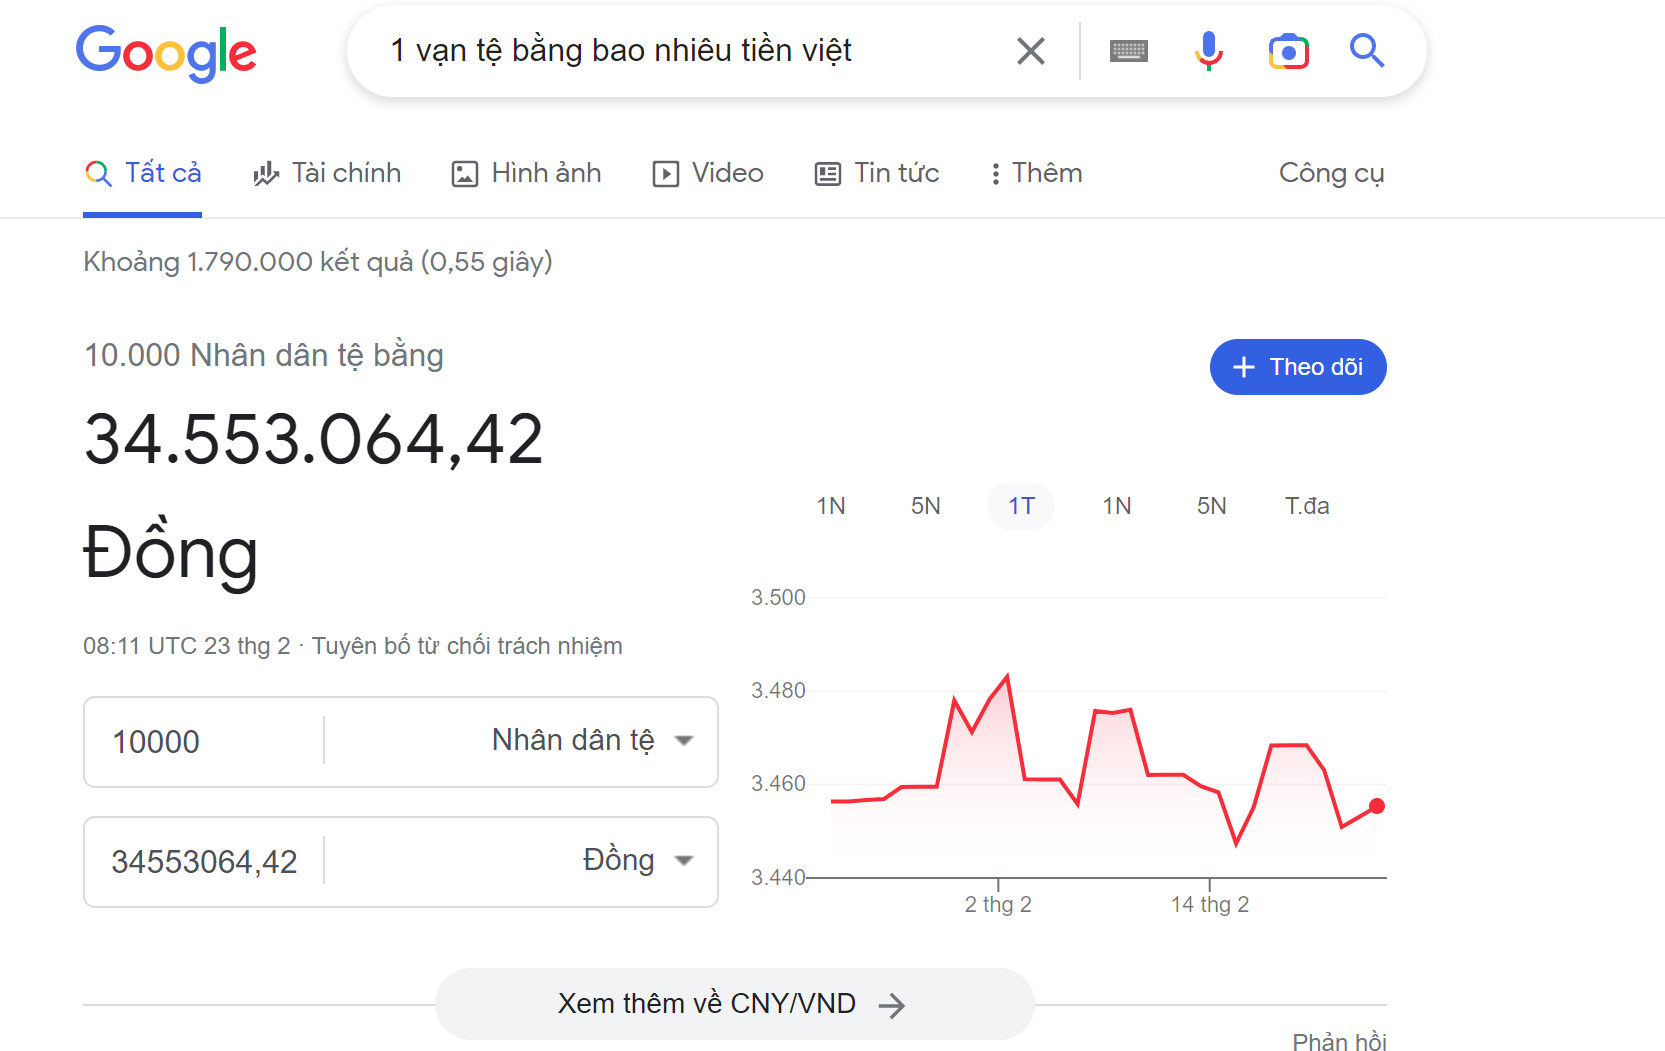 Kết quả khi tra cứu tỷ giá 1 vạn tệ bằng bao nhiêu tiền Việt qua Google